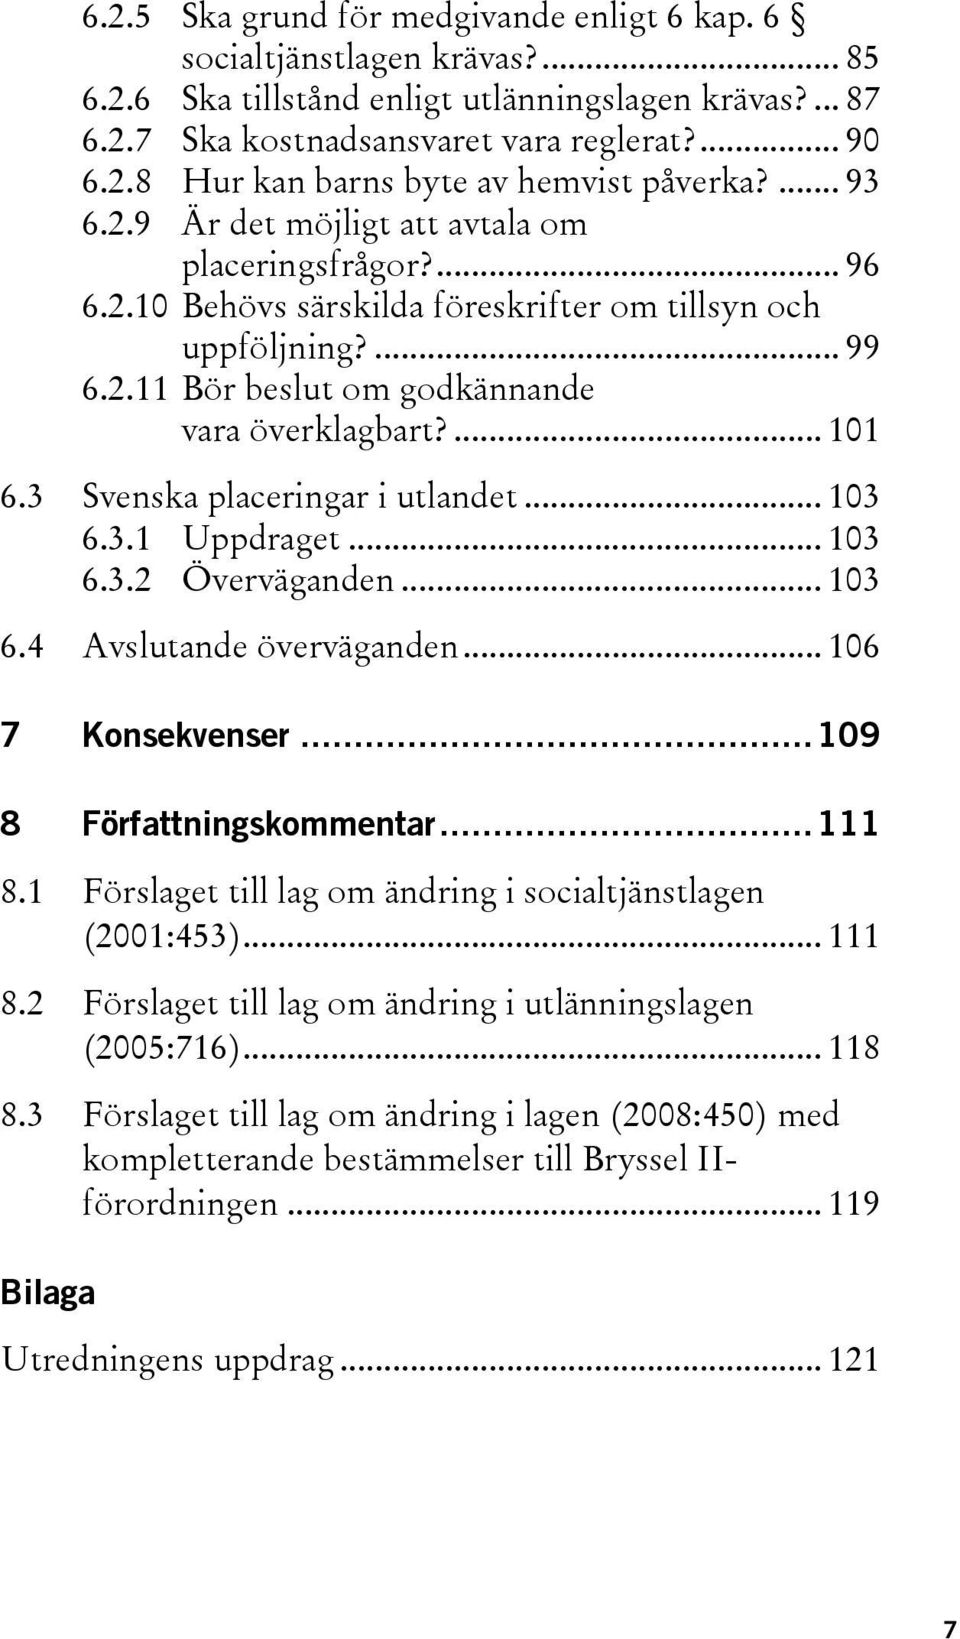 3 Svenska placeringar i utlandet... 103 6.3.1 Uppdraget... 103 6.3.2 Överväganden... 103 6.4 Avslutande överväganden... 106 7 Konsekvenser...109 8 Författningskommentar...111 8.